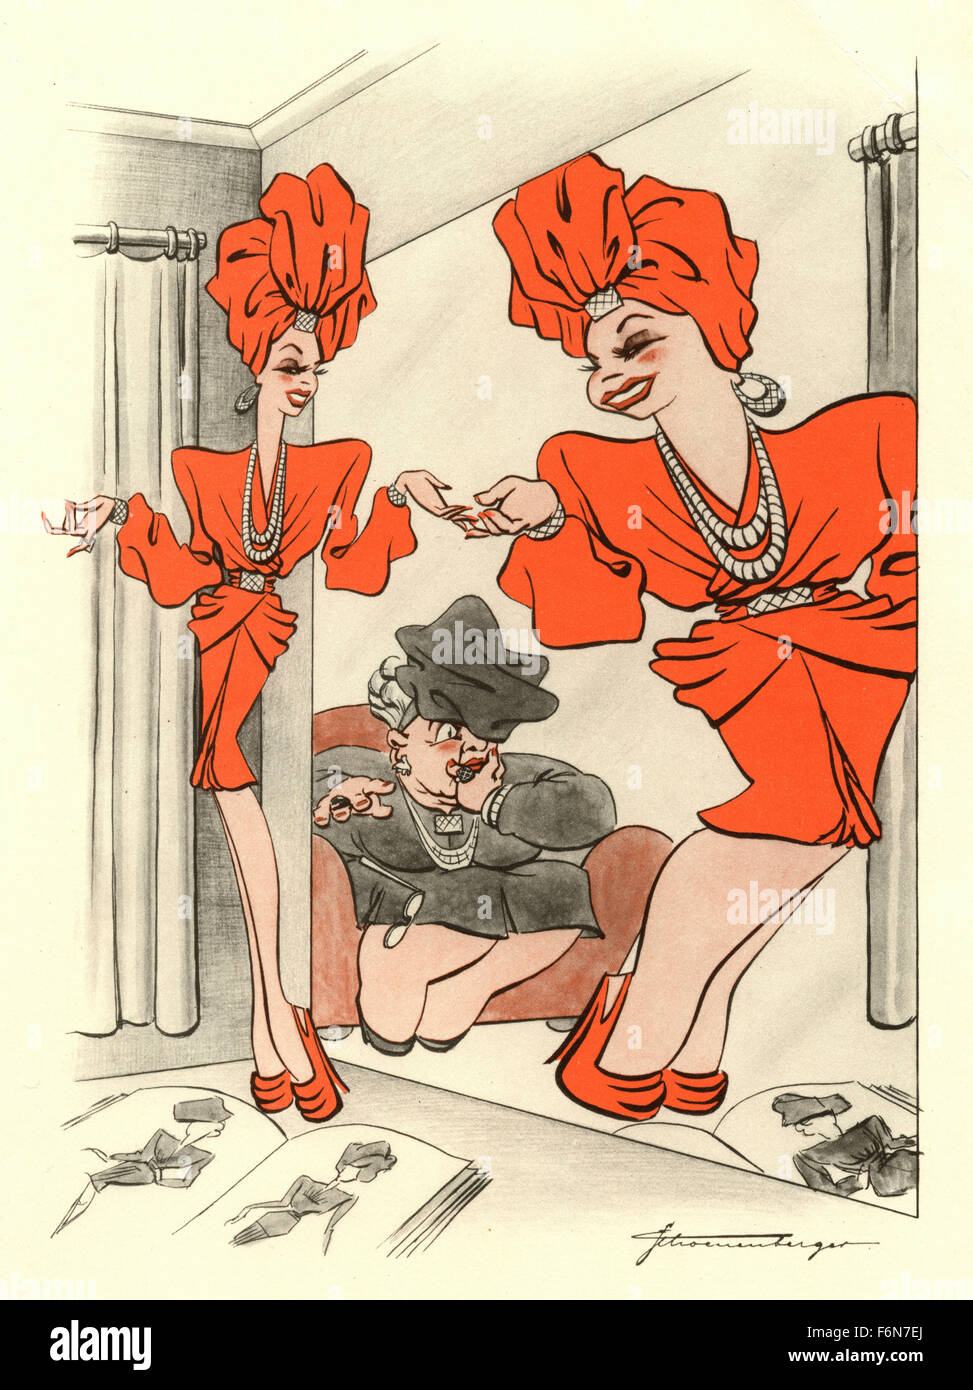 Ilustraciones satírico alemán de 1950: la mujer en el espejo Foto de stock